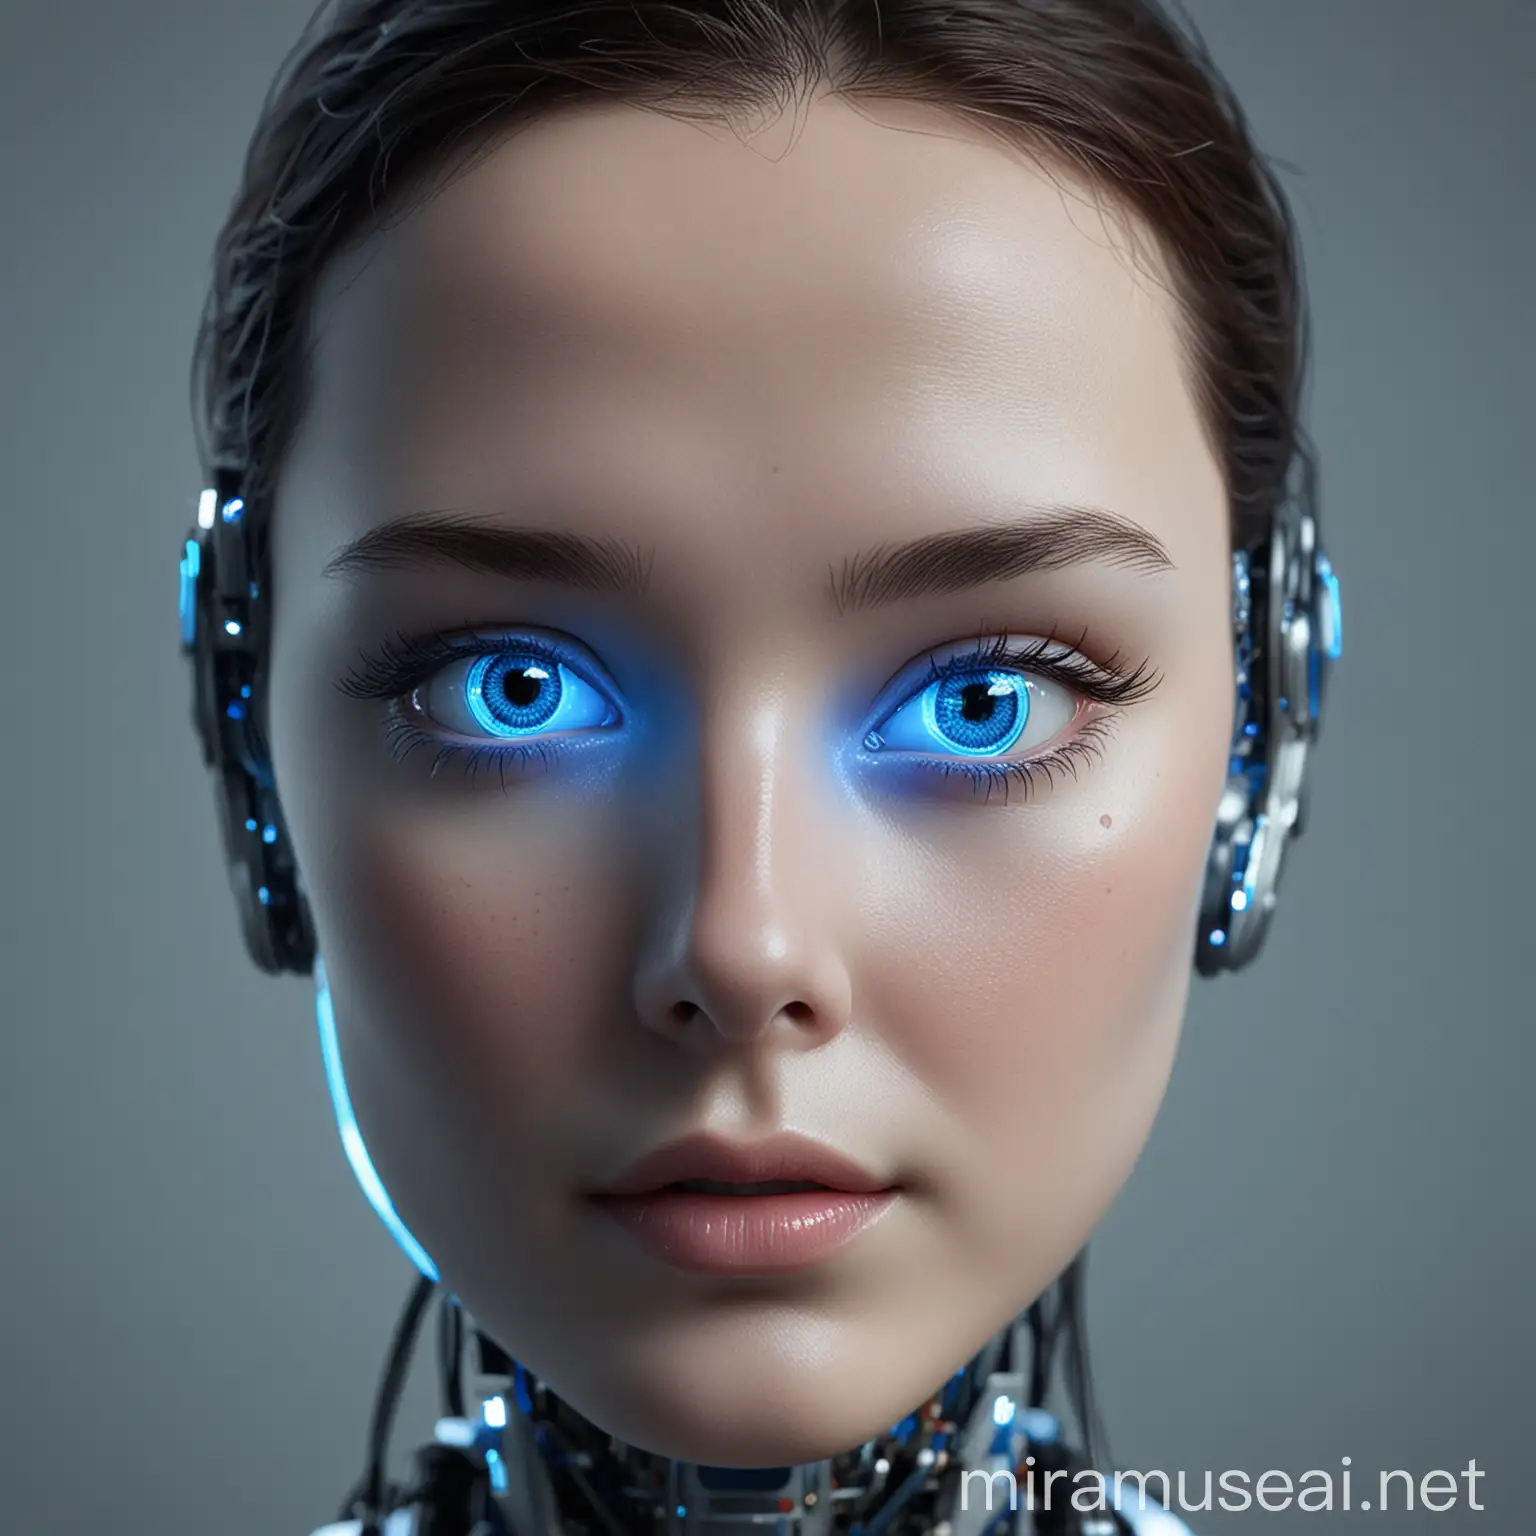 yapay zekayı robot suratı gibi göster gözleri mavi olsun suratın etrafı ışıklı olsun